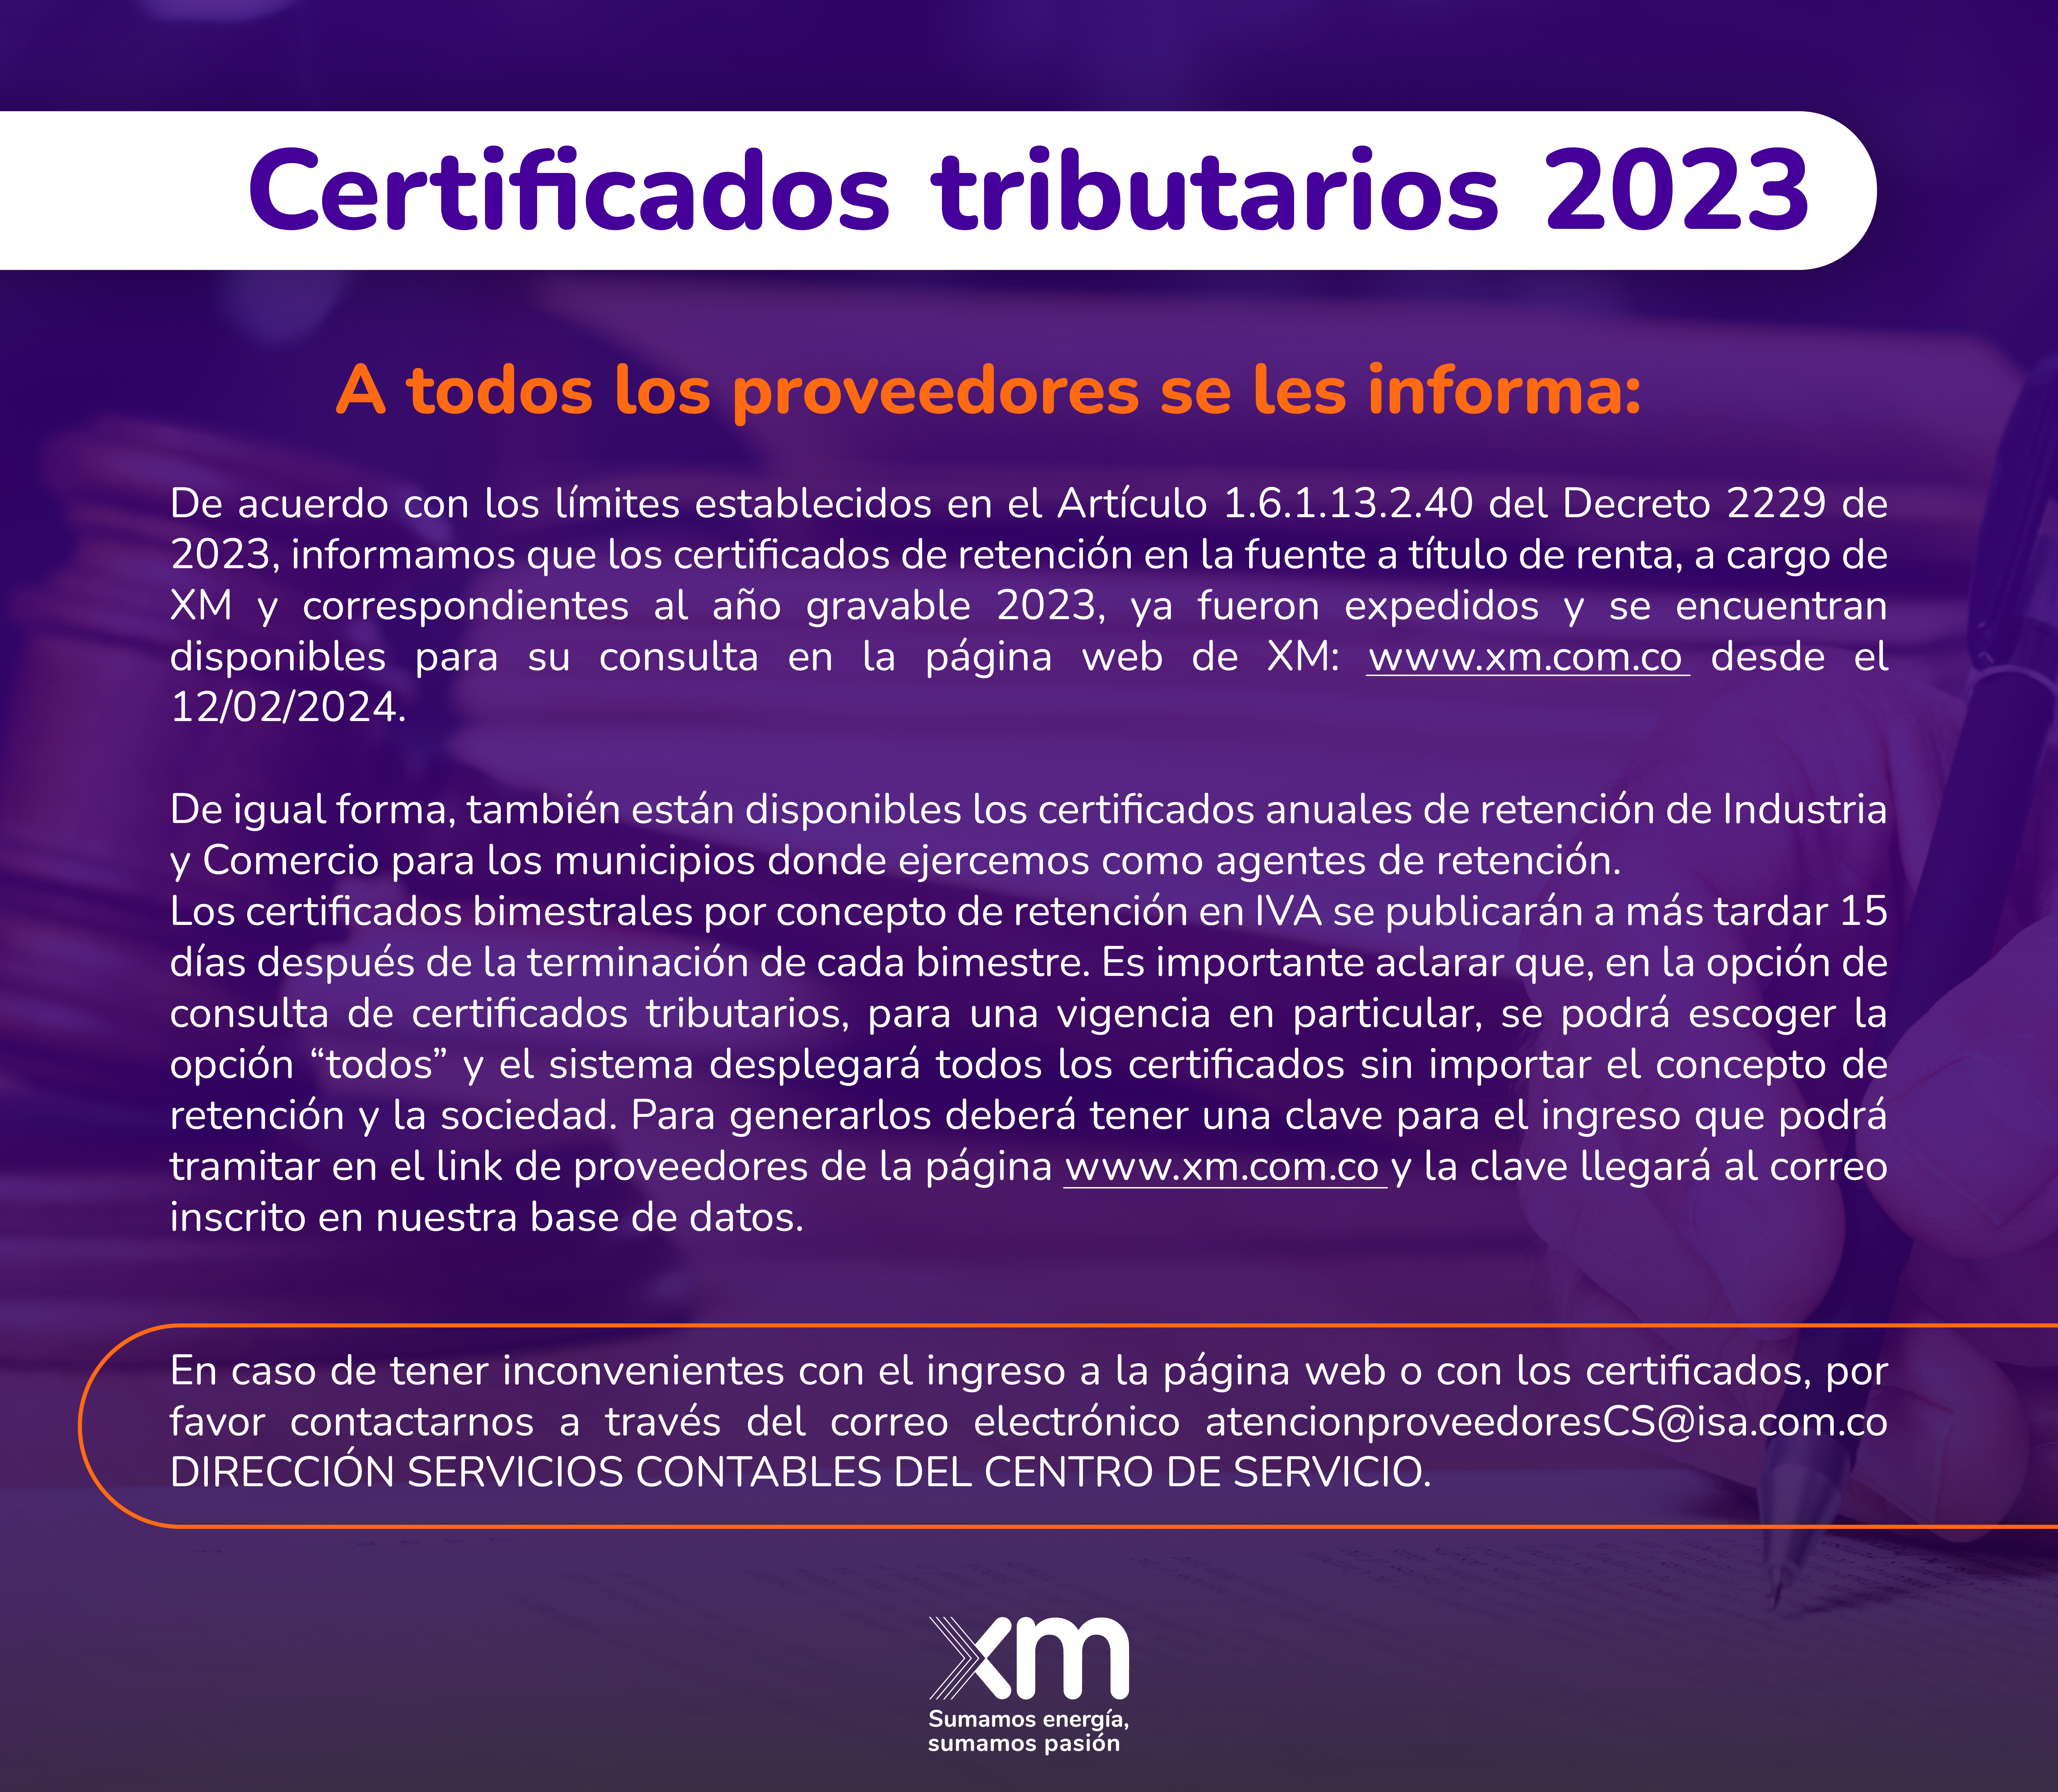 Certificados tributarios: De acuerdo con los límites establecidos en el Artículo 1.6.1.13.2.40 del Decreto 2229 de 2023, informamos que los certificados de retención en la fuente a título de renta, a cargo de XM y correspondientes al año gravable 2023, ya fueron expedidos y se encuentran disponibles para su consulta en la página web de XM: www.xm.com.co desde el 12/02/2024.  De igual forma, también están disponibles los certificados anuales de retención de Industria y Comercio para los municipios donde ejercemos como agentes de retención. Los certificados bimestrales por concepto de retención en IVA se publicarán a más tardar 15 días después de la terminación de cada bimestre. Es importante aclarar que, en la opción de consulta de certificados tributarios, para una vigencia en particular, se podrá escoger la opción “todos” y el sistema desplegará todos los certificados sin importar el concepto de retención y la sociedad. Para generarlos deberá tener una clave para el ingreso que podrá tramitar en el link de p